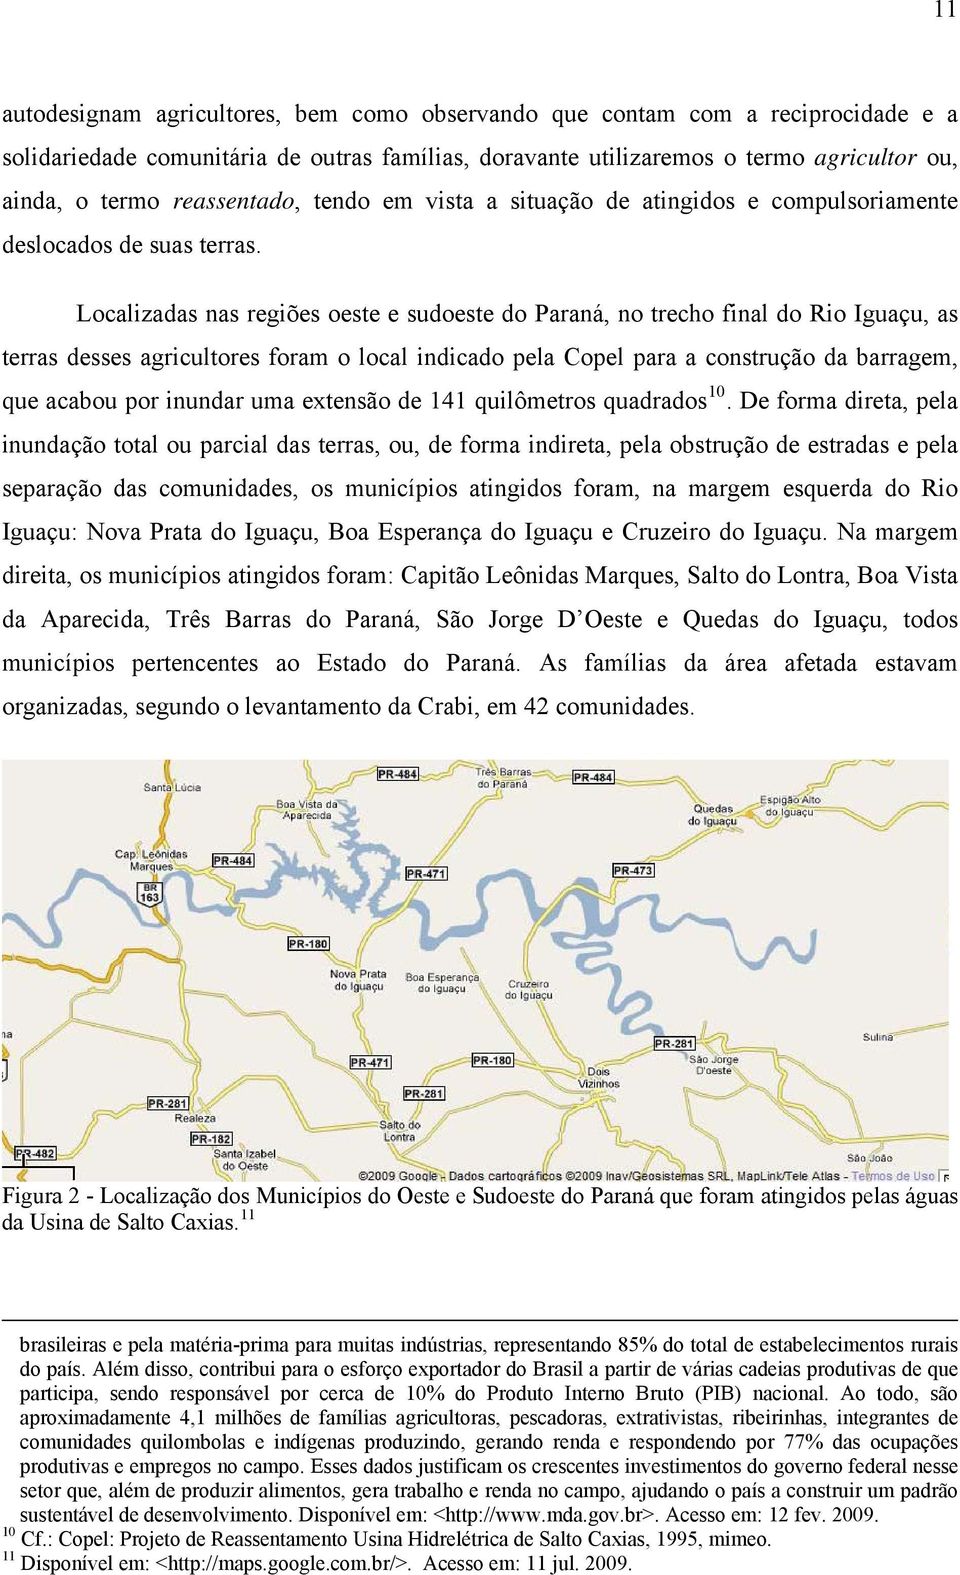 Localizadas nas regiões oeste e sudoeste do Paraná, no trecho final do Rio Iguaçu, as terras desses agricultores foram o local indicado pela Copel para a construção da barragem, que acabou por